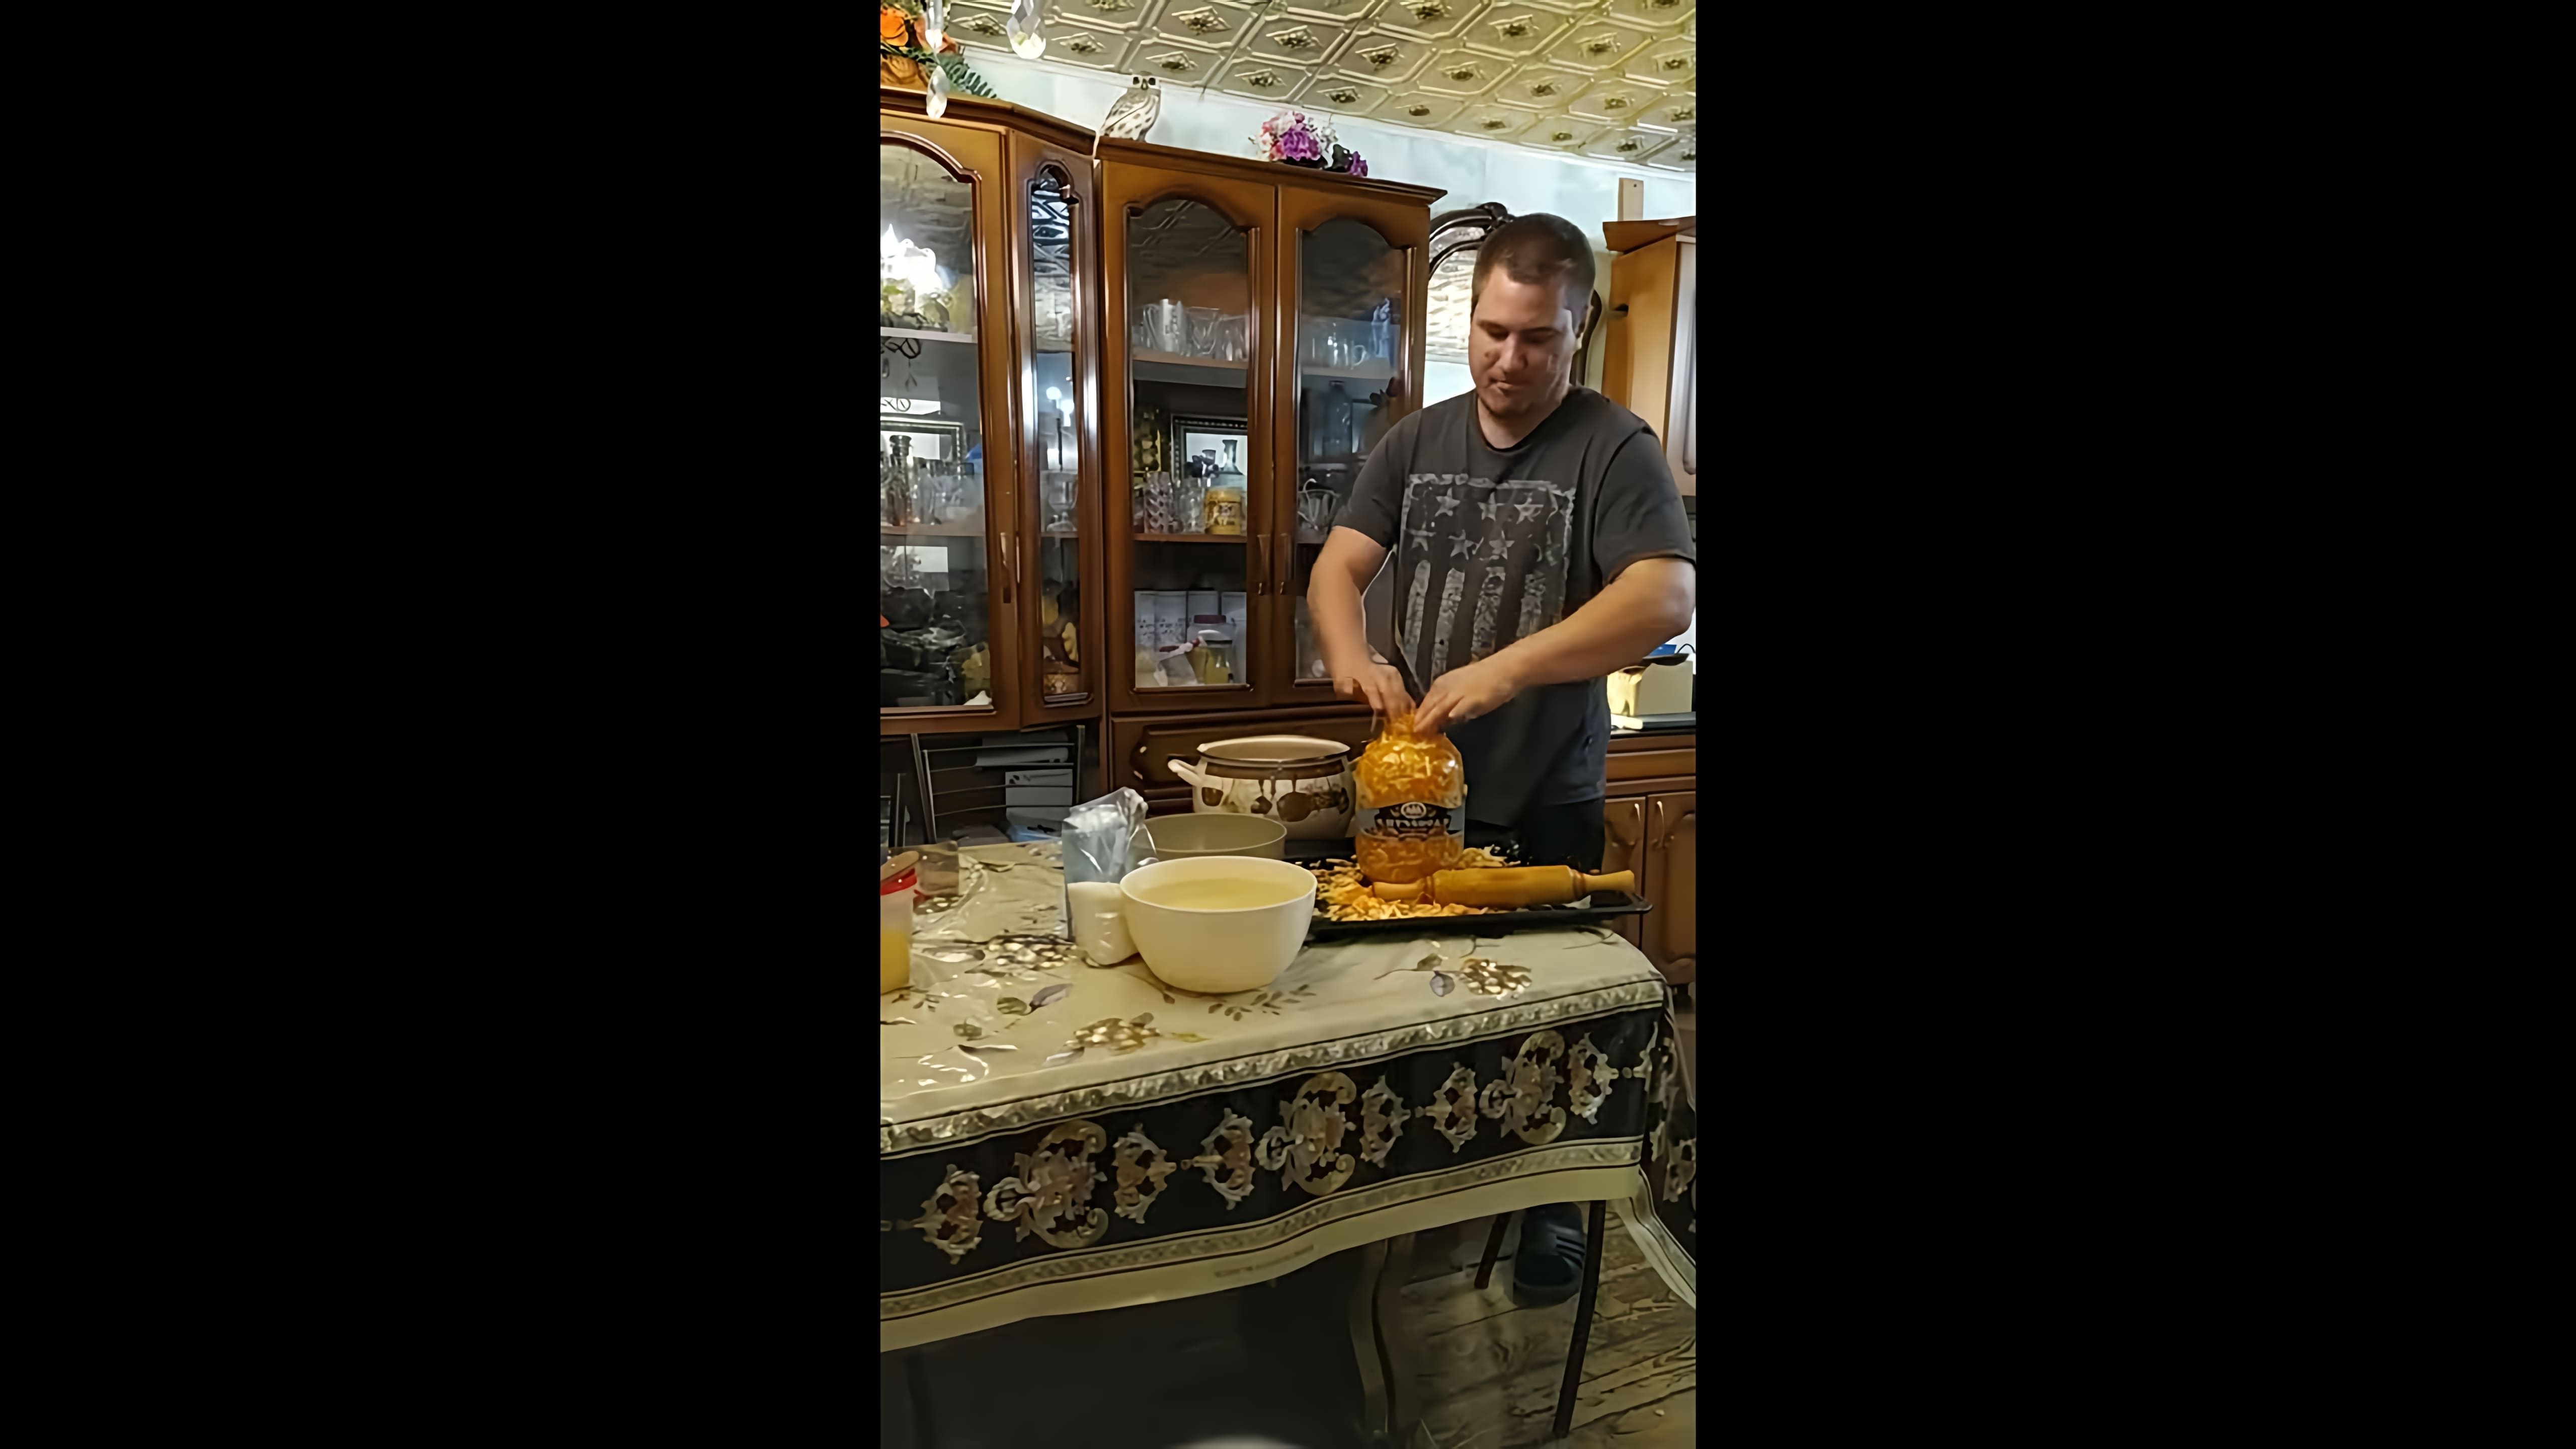 В этом видео демонстрируется процесс приготовления квашеной капусты по старинному рецепту